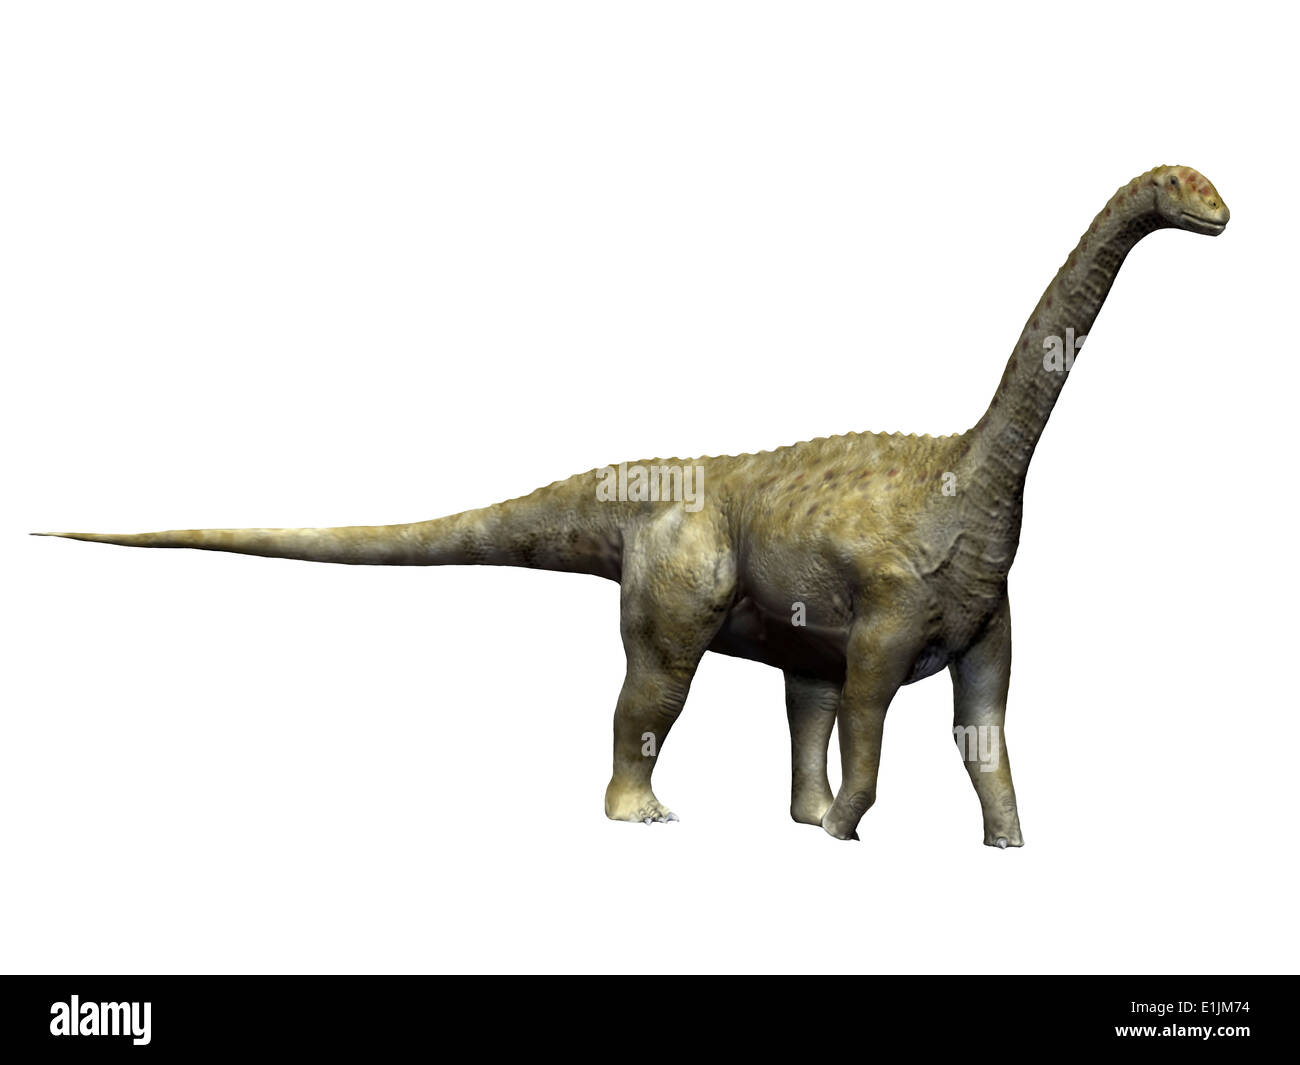 Camarasaurus dinosaur, white background. Stock Photo